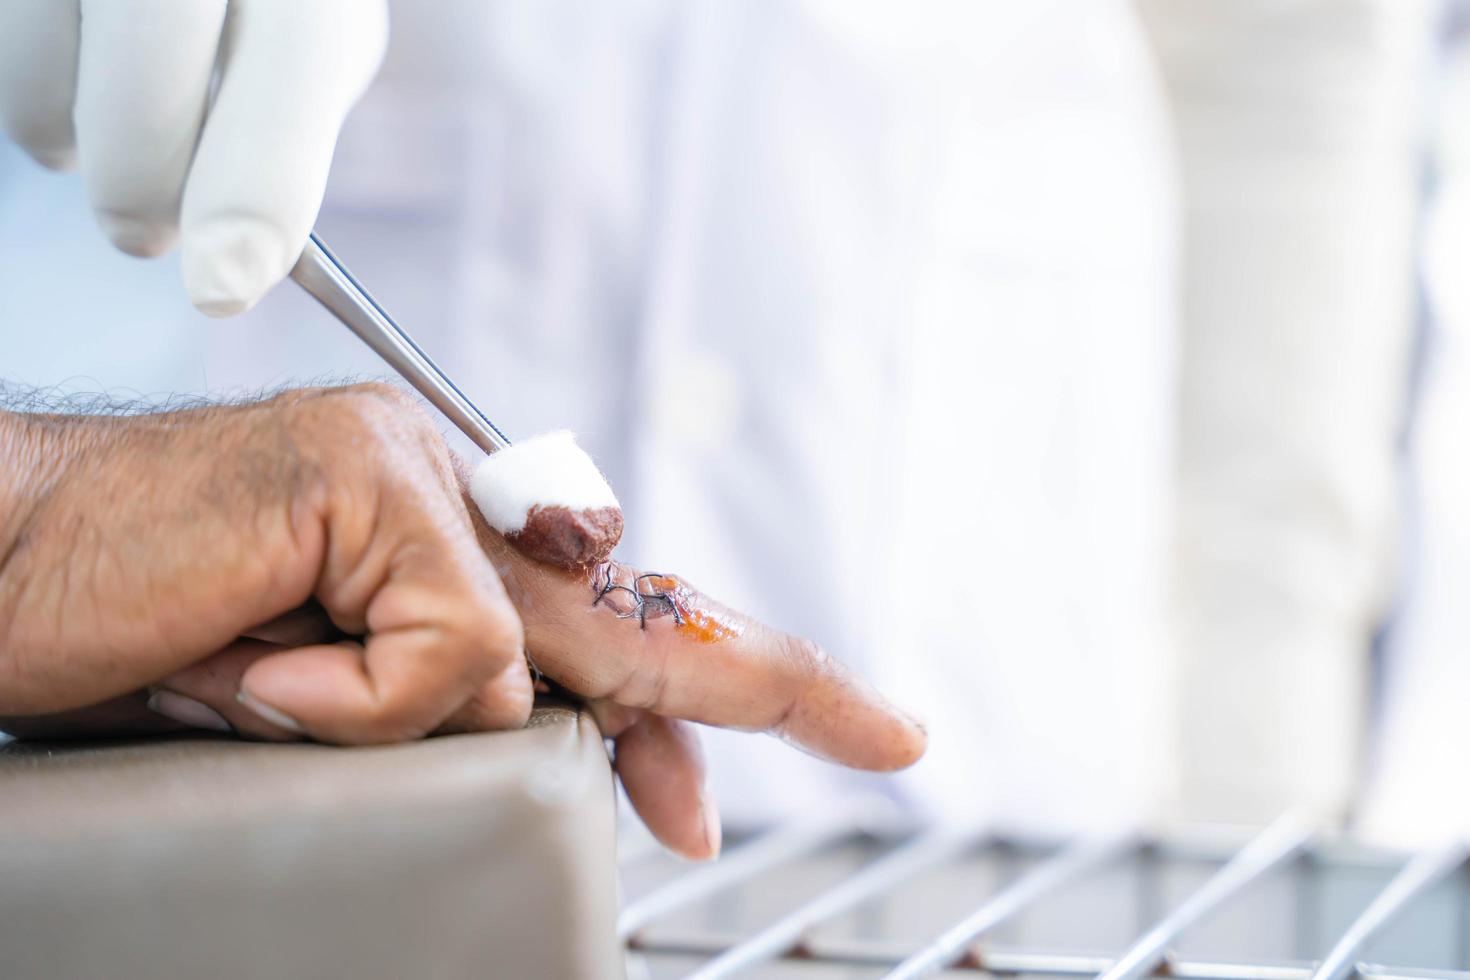 un medico in abiti bianchi, indossando guanti bianchi anti-germe, sta pulendo la ferita sul dito di una persona causata da un coltello tagliato foto